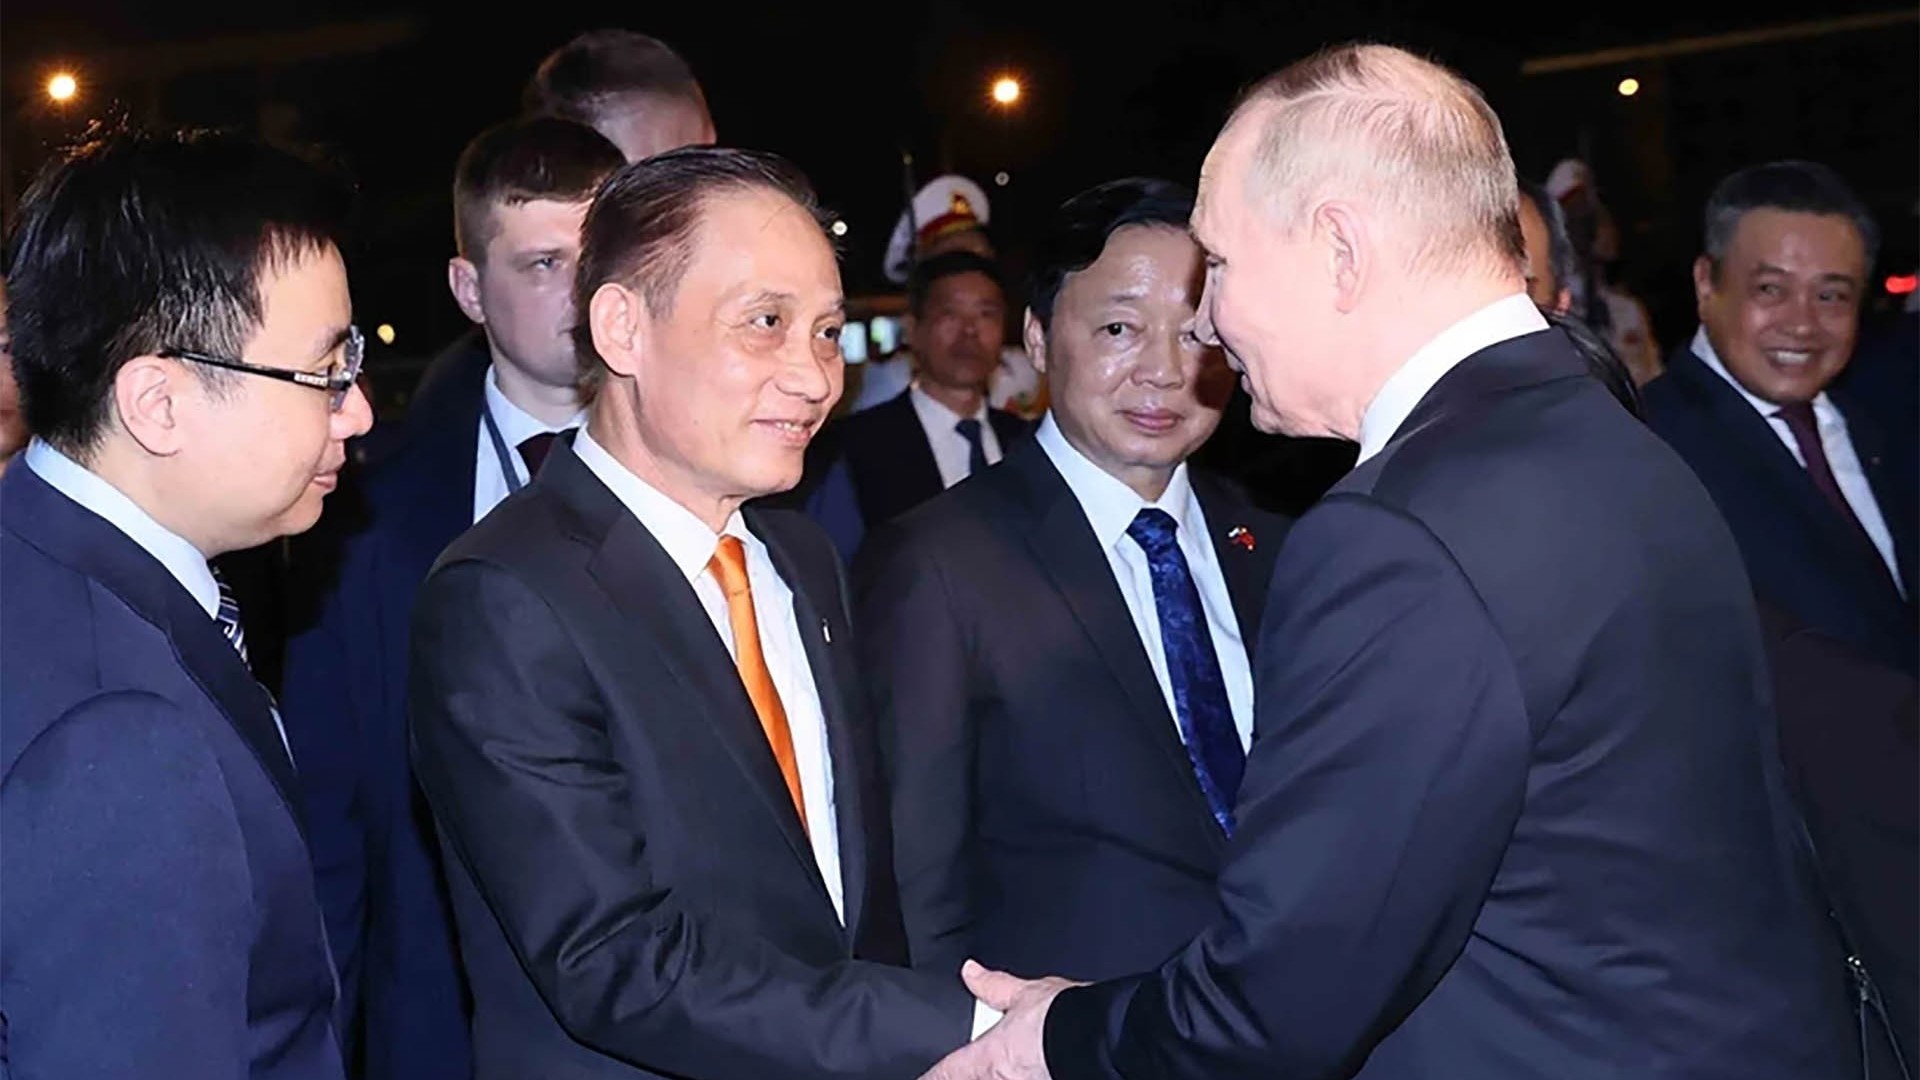 Tổng thống Nga Vladimir Putin kết thúc tốt đẹp chuyến thăm cấp Nhà nước tới Việt Nam